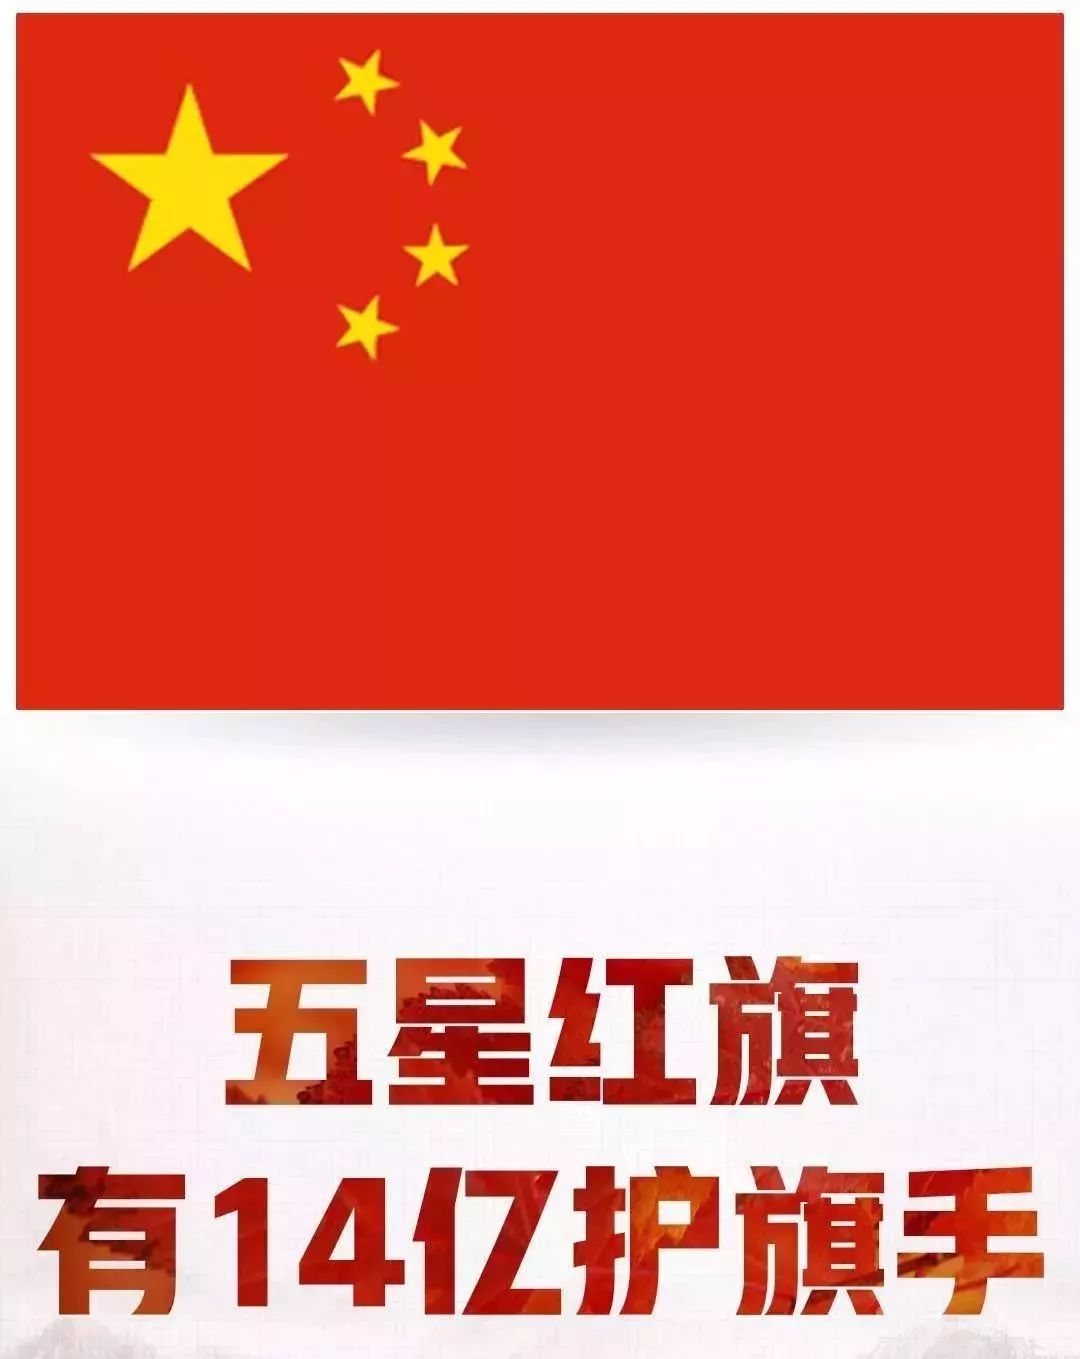 今天五星红旗刷爆深圳人的朋友圈请给我一面国旗微信官方